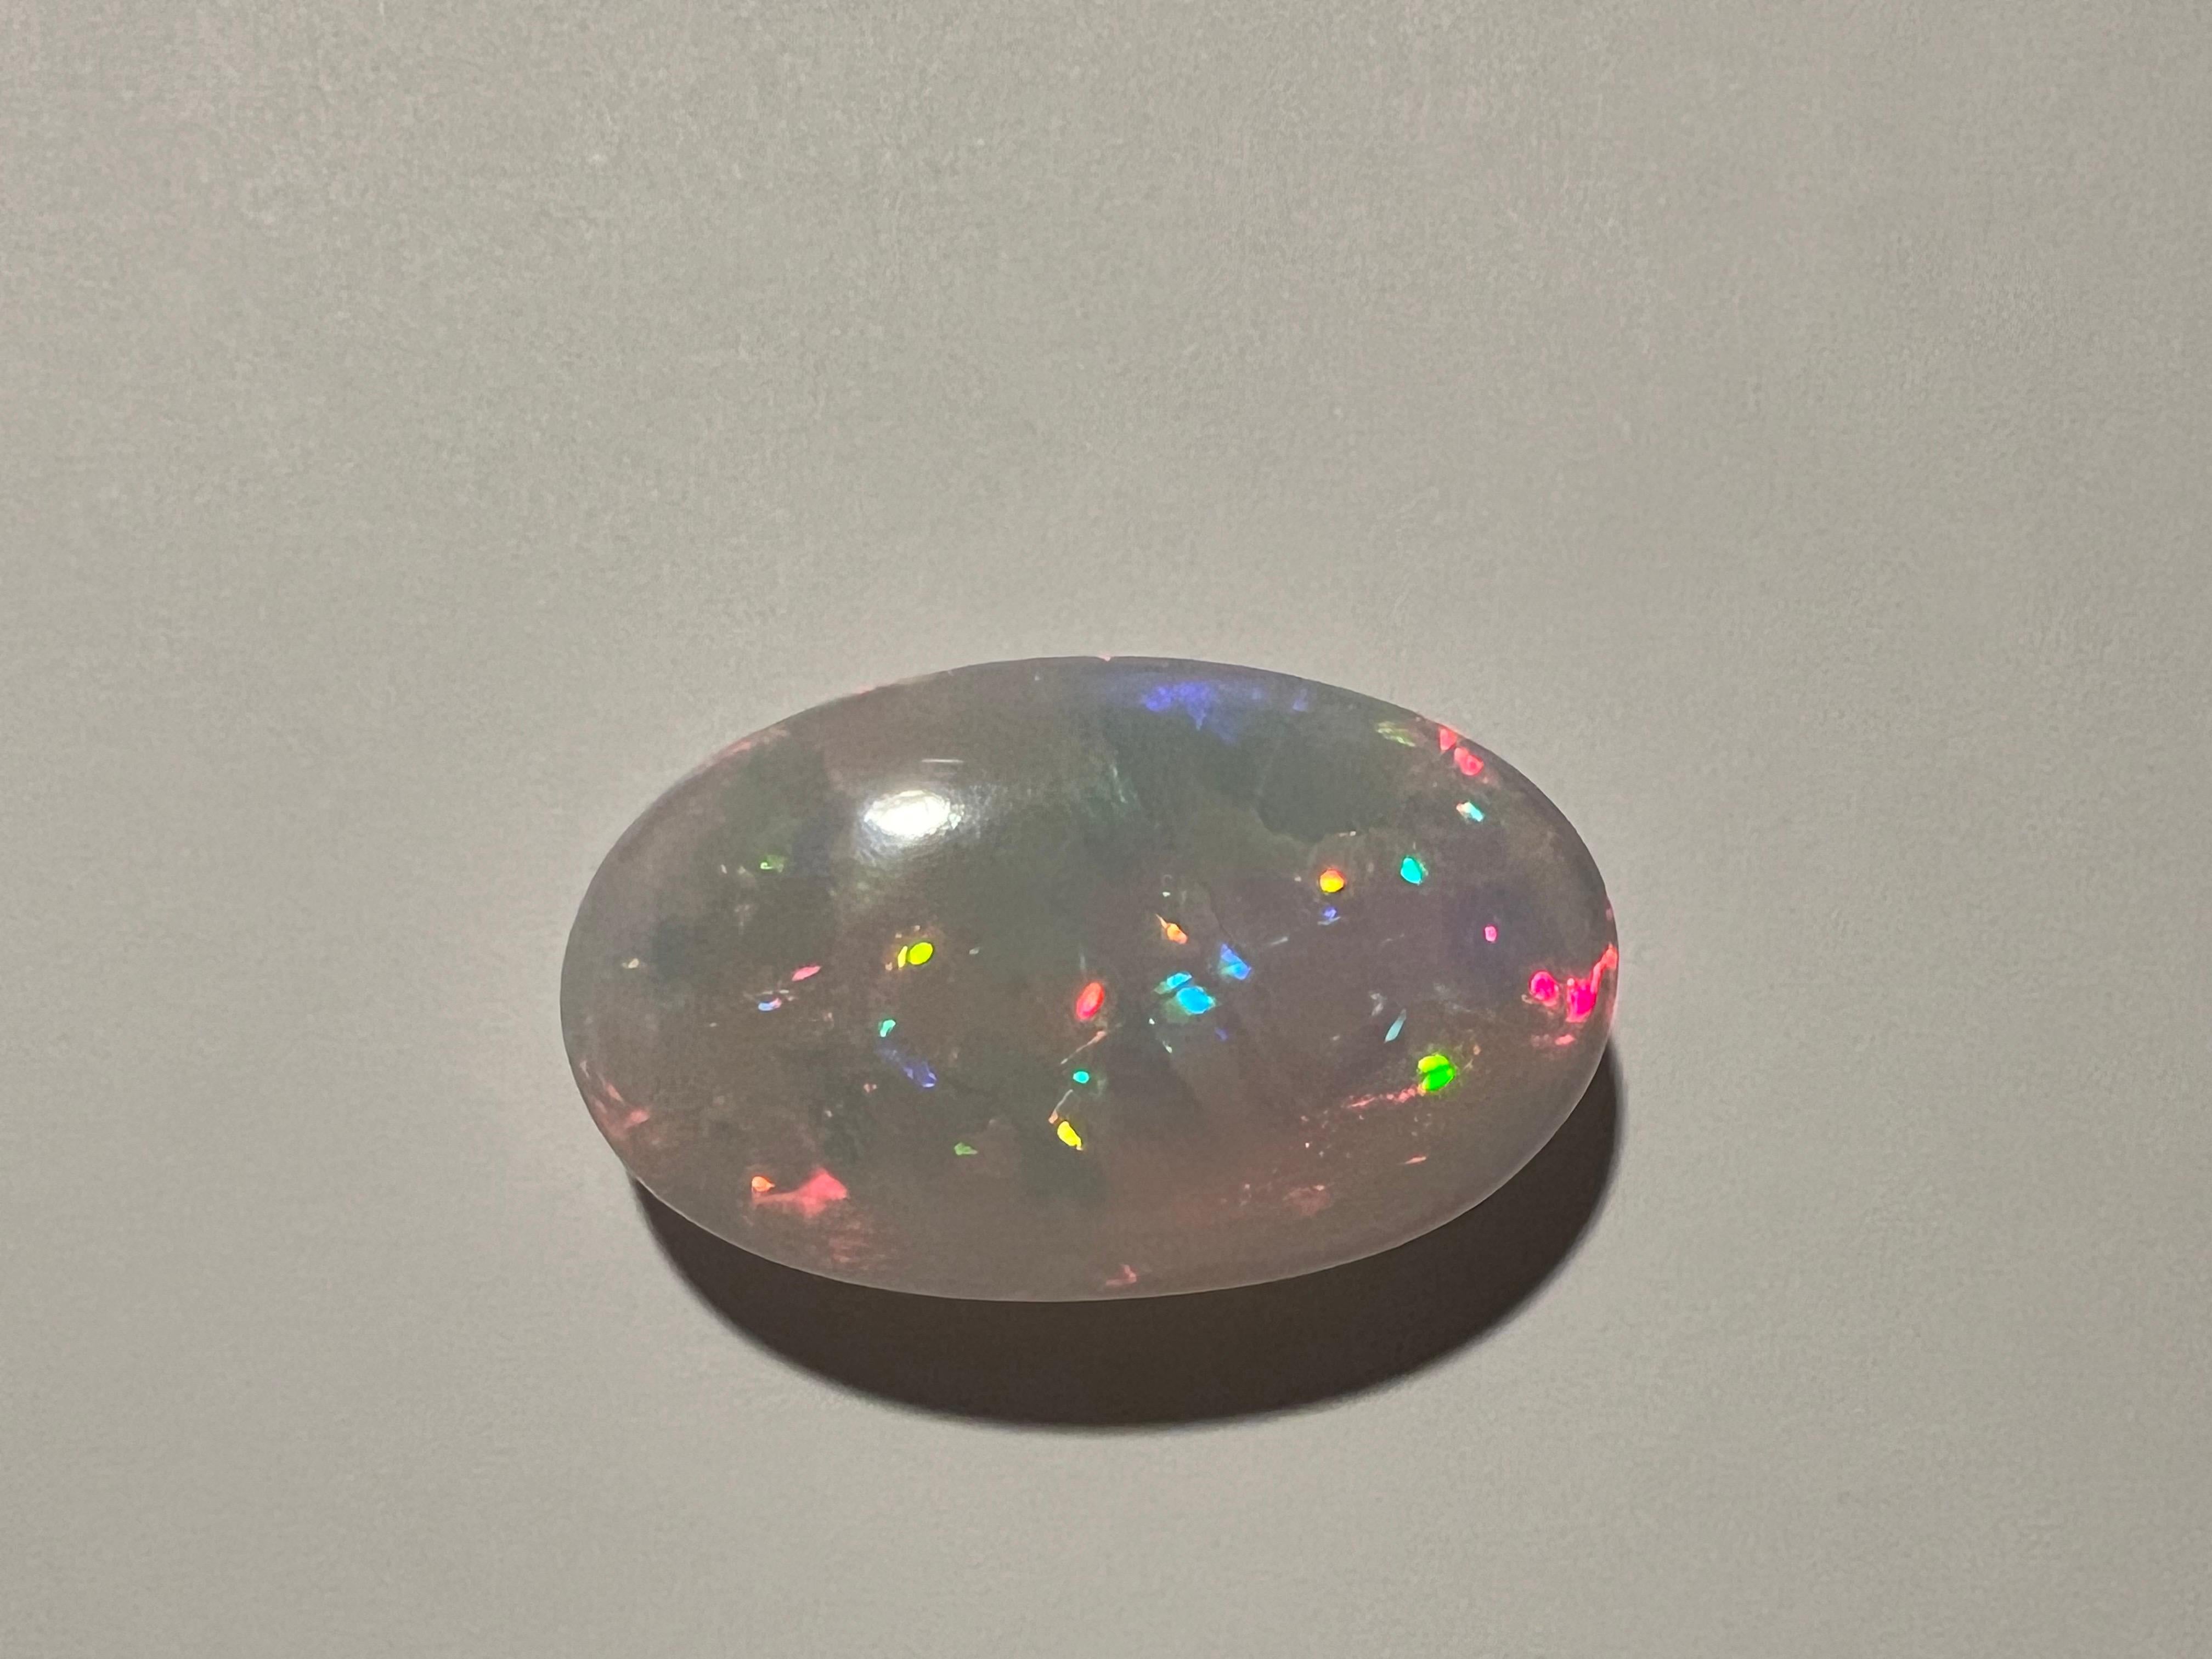 Dieser 72,30 Karat schwere, ovale, lose Edelstein aus natürlichem Opal hat ein phänomenales Feuerverhalten. Dieser riesige Edelstein kann zu einem atemberaubenden Schmuckstück nach Ihrer Wahl verarbeitet werden.
Größe des Steins ist 40.02mm x